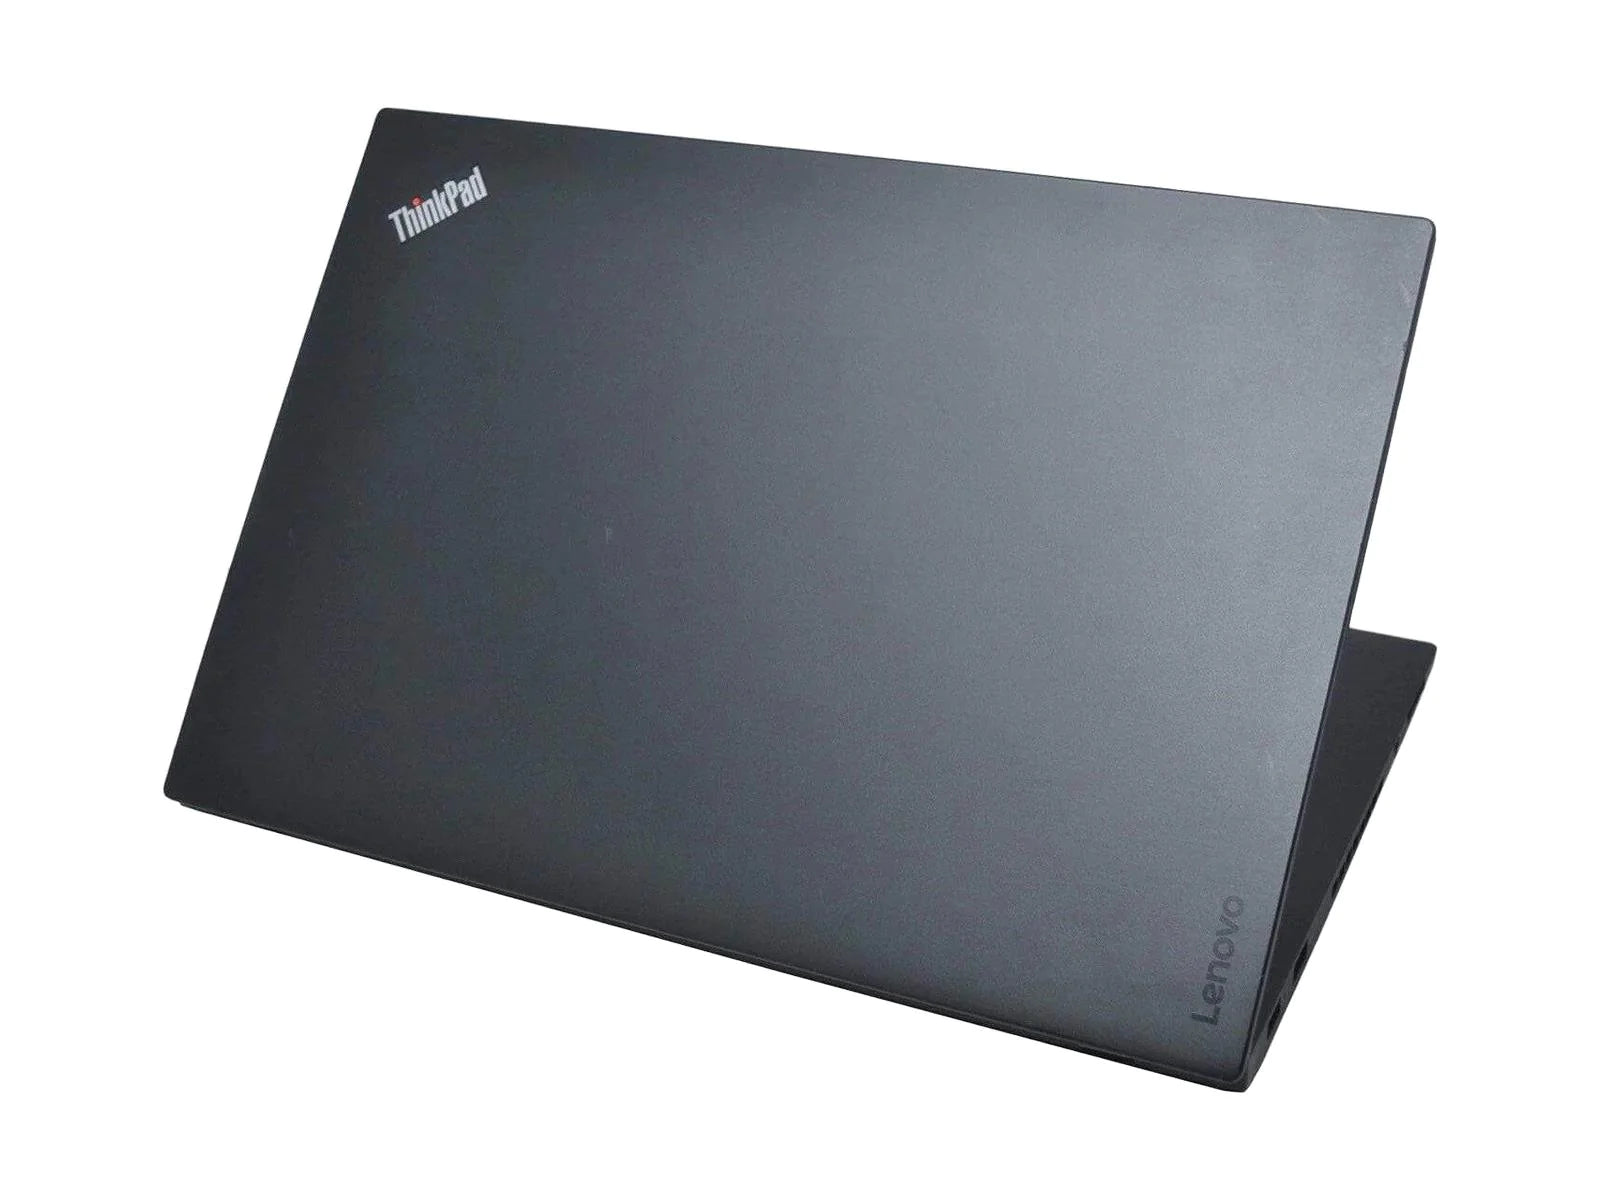 Lenovo ThinkPad T460S Back Angled View